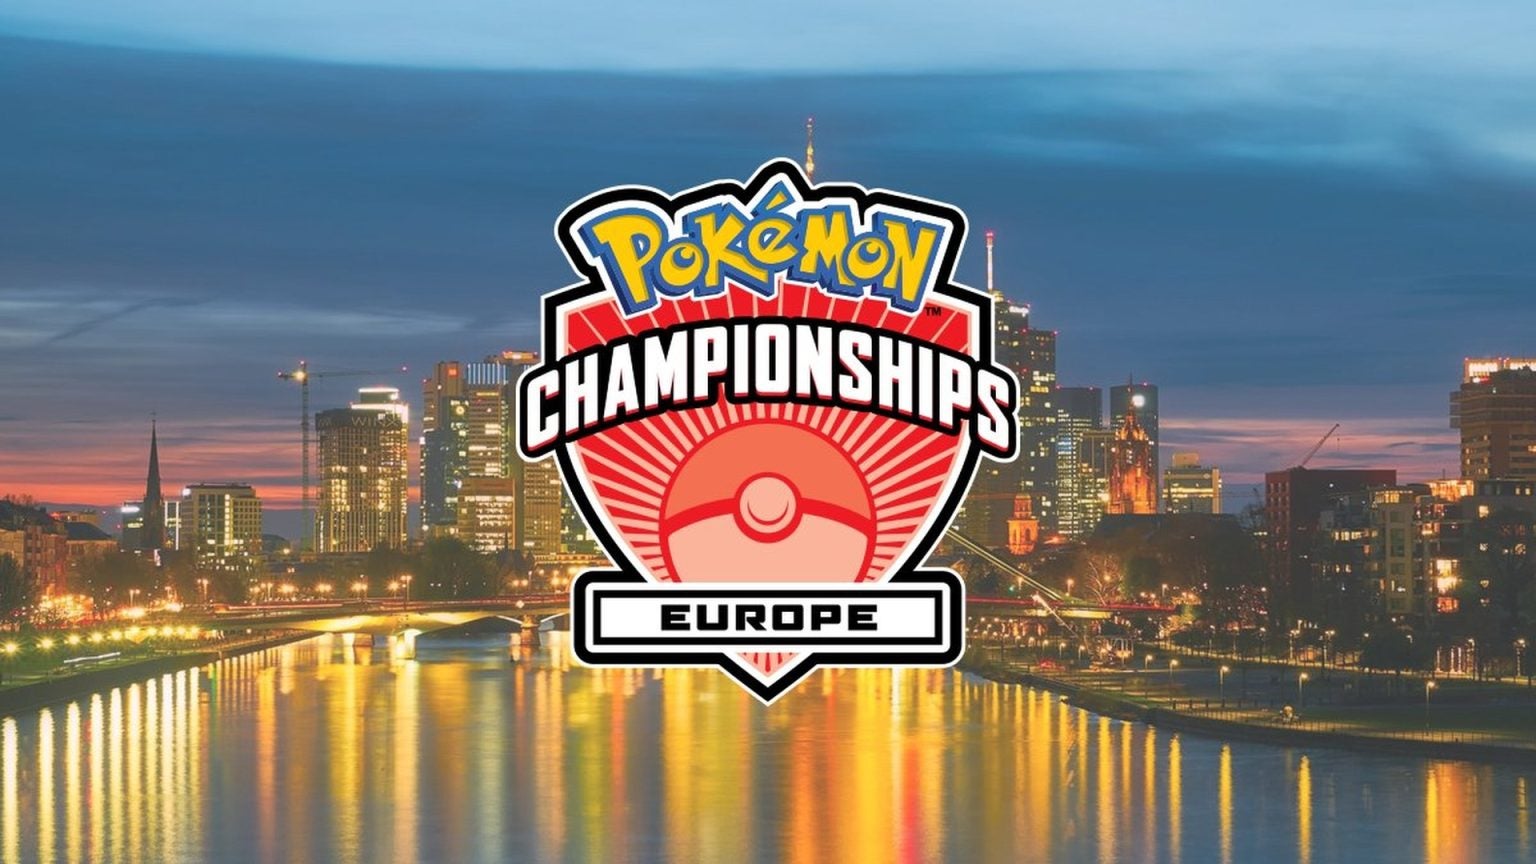 Afbeeldingen van De Pokémon Europe International Championships toont een divers en springlevend publiek